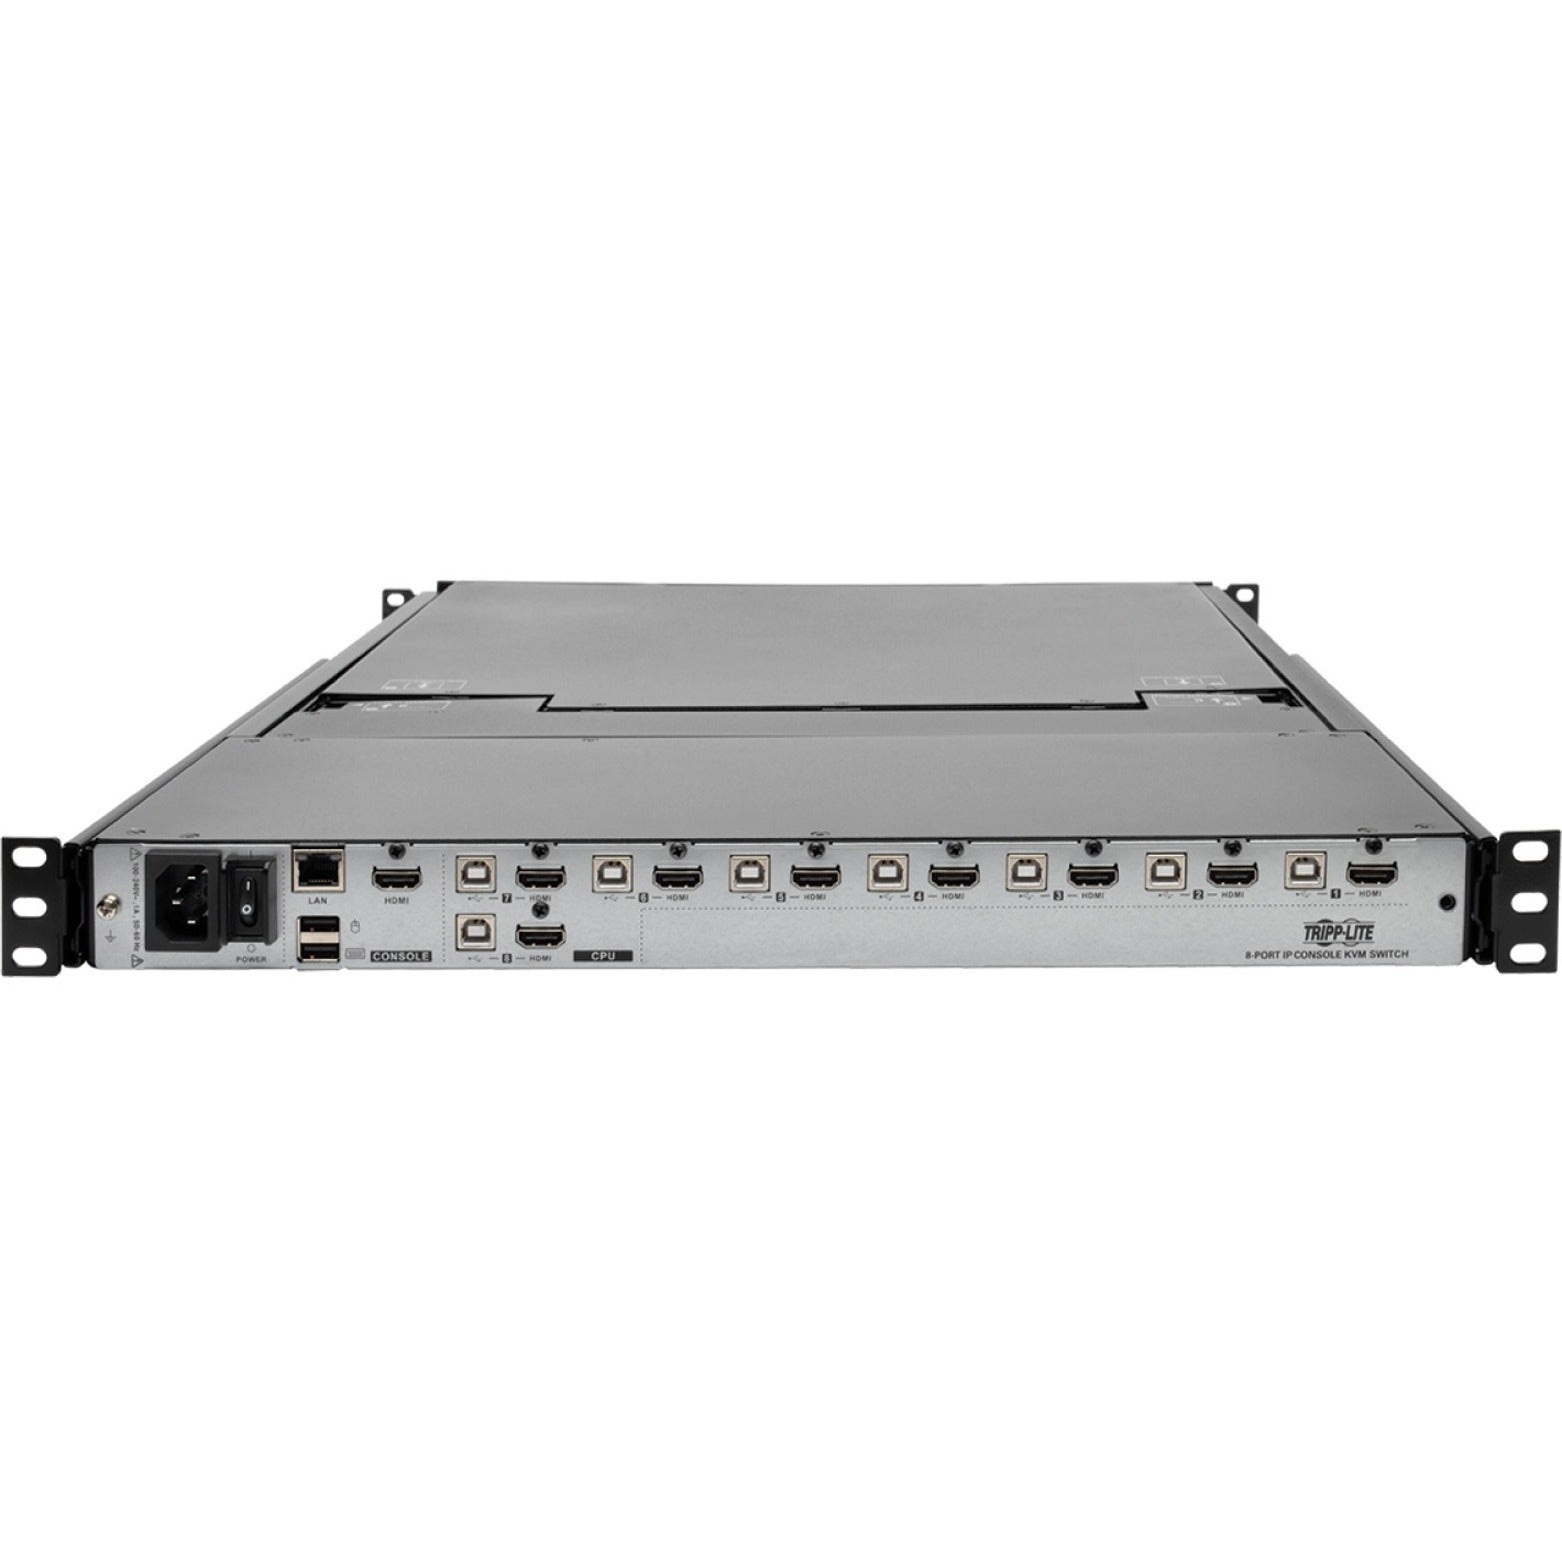 تريب لايت B030-008-17-IP NetDirector 8-Port 1U راك مونت كونسول HDMI KVM التبديل مع شاشة LCD بقياس 17 بوصة و IP، Full HD، لوحة تعمل باللمس، متوافق مع TAA تريب لايت ترجمة اسم العلامة التجارية: الجولة الخفيفة